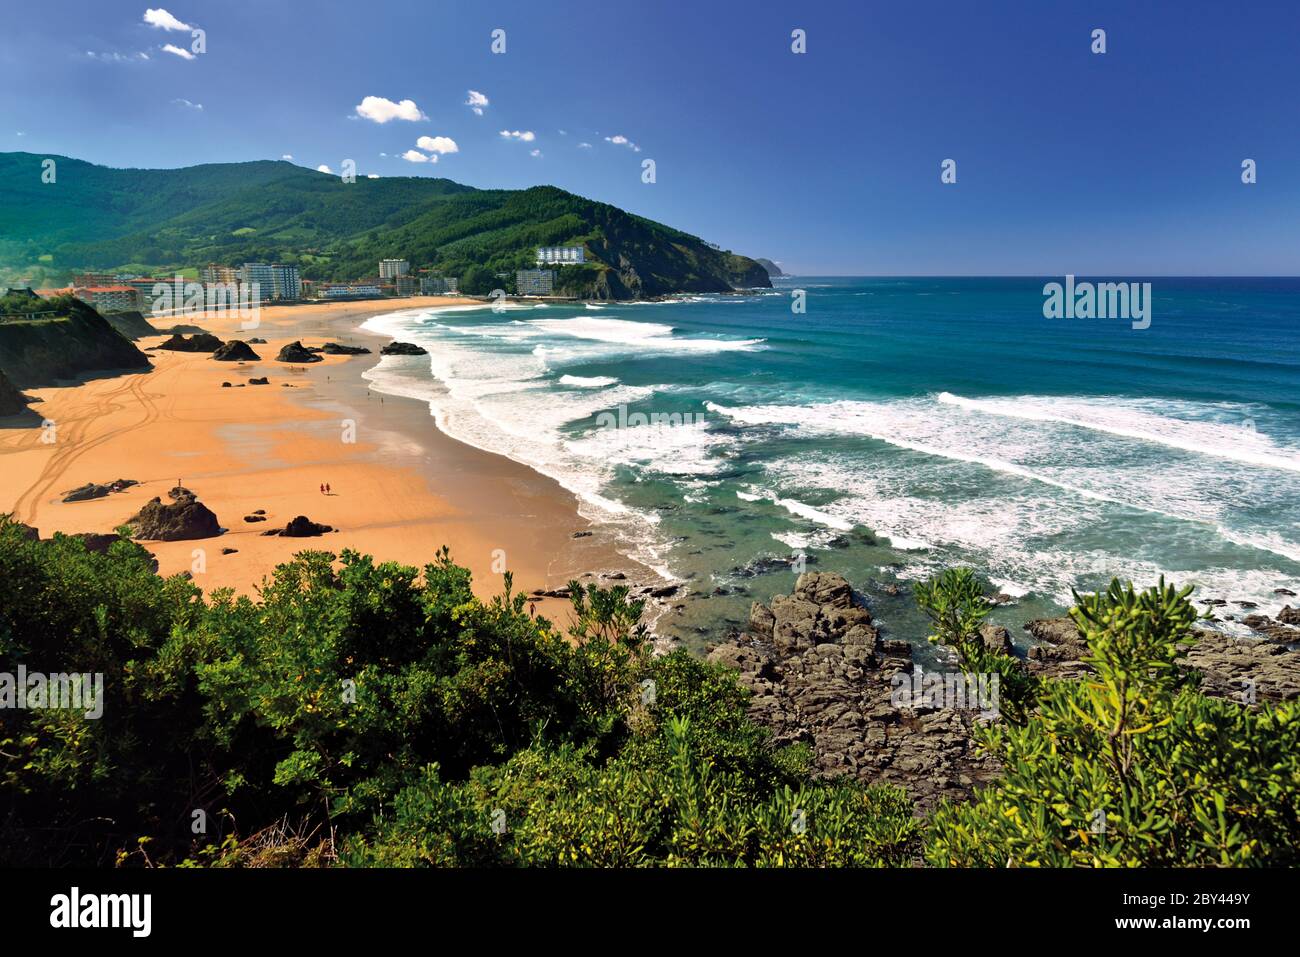 Vue sur la belle plage avec de grandes étendues de sable, des rochers et des collines verdoyantes en arrière-plan. Banque D'Images